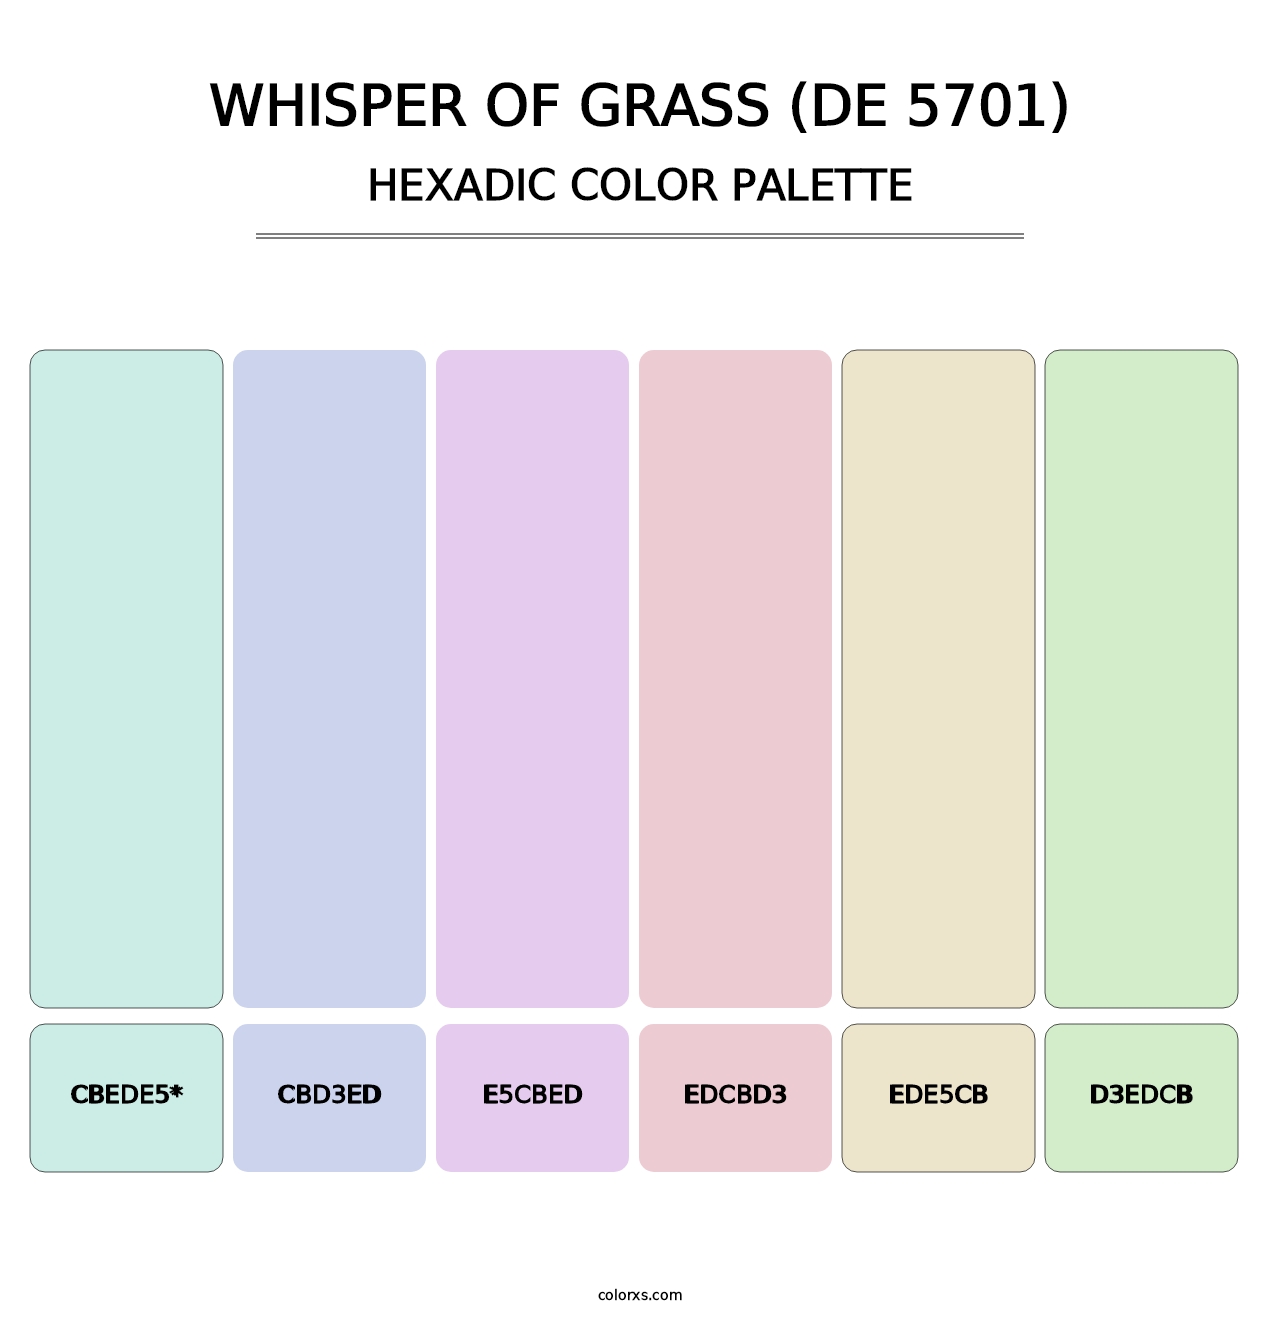 Whisper of Grass (DE 5701) - Hexadic Color Palette